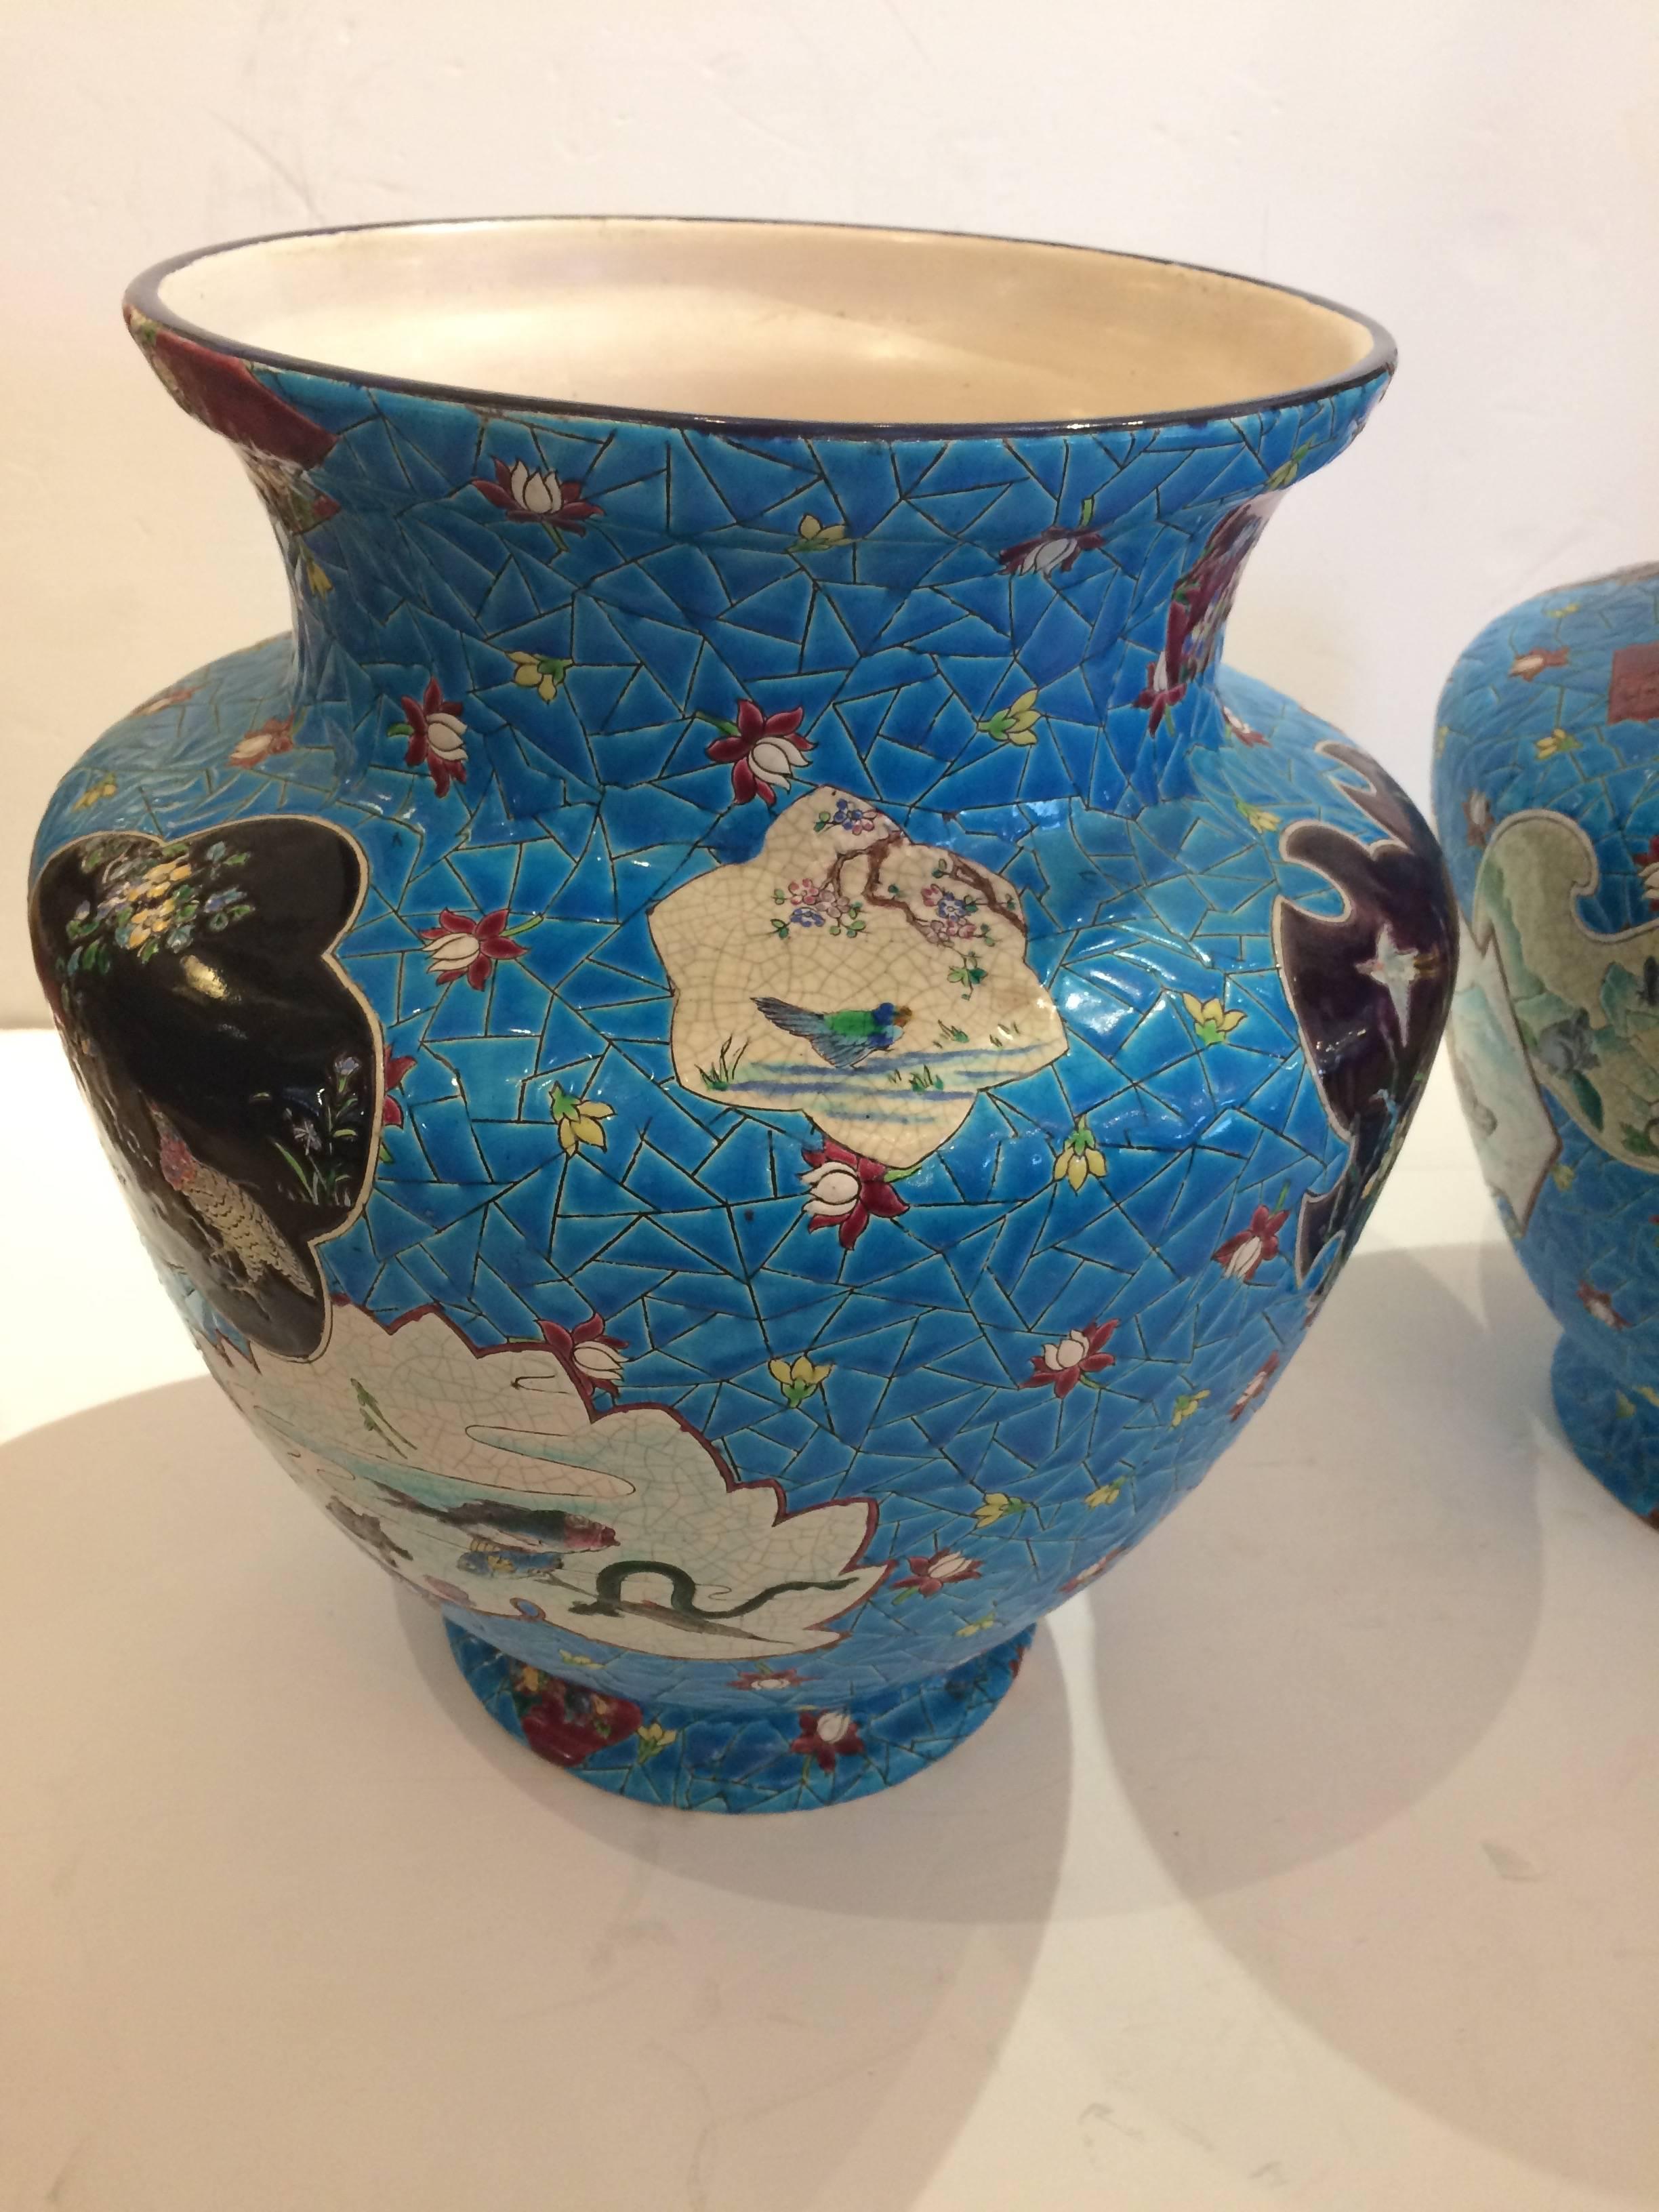 Ein beeindruckendes Paar sehr großer französischer Longwy-Vasen mit akribischen Details wie Blumen, einer figürlichen Szene, Vögeln und einem Hahn in einer schillernden Farbpalette aus leuchtendem Ceruleanblau, Schwarz, Weiß und Kastanienbraun. Eine